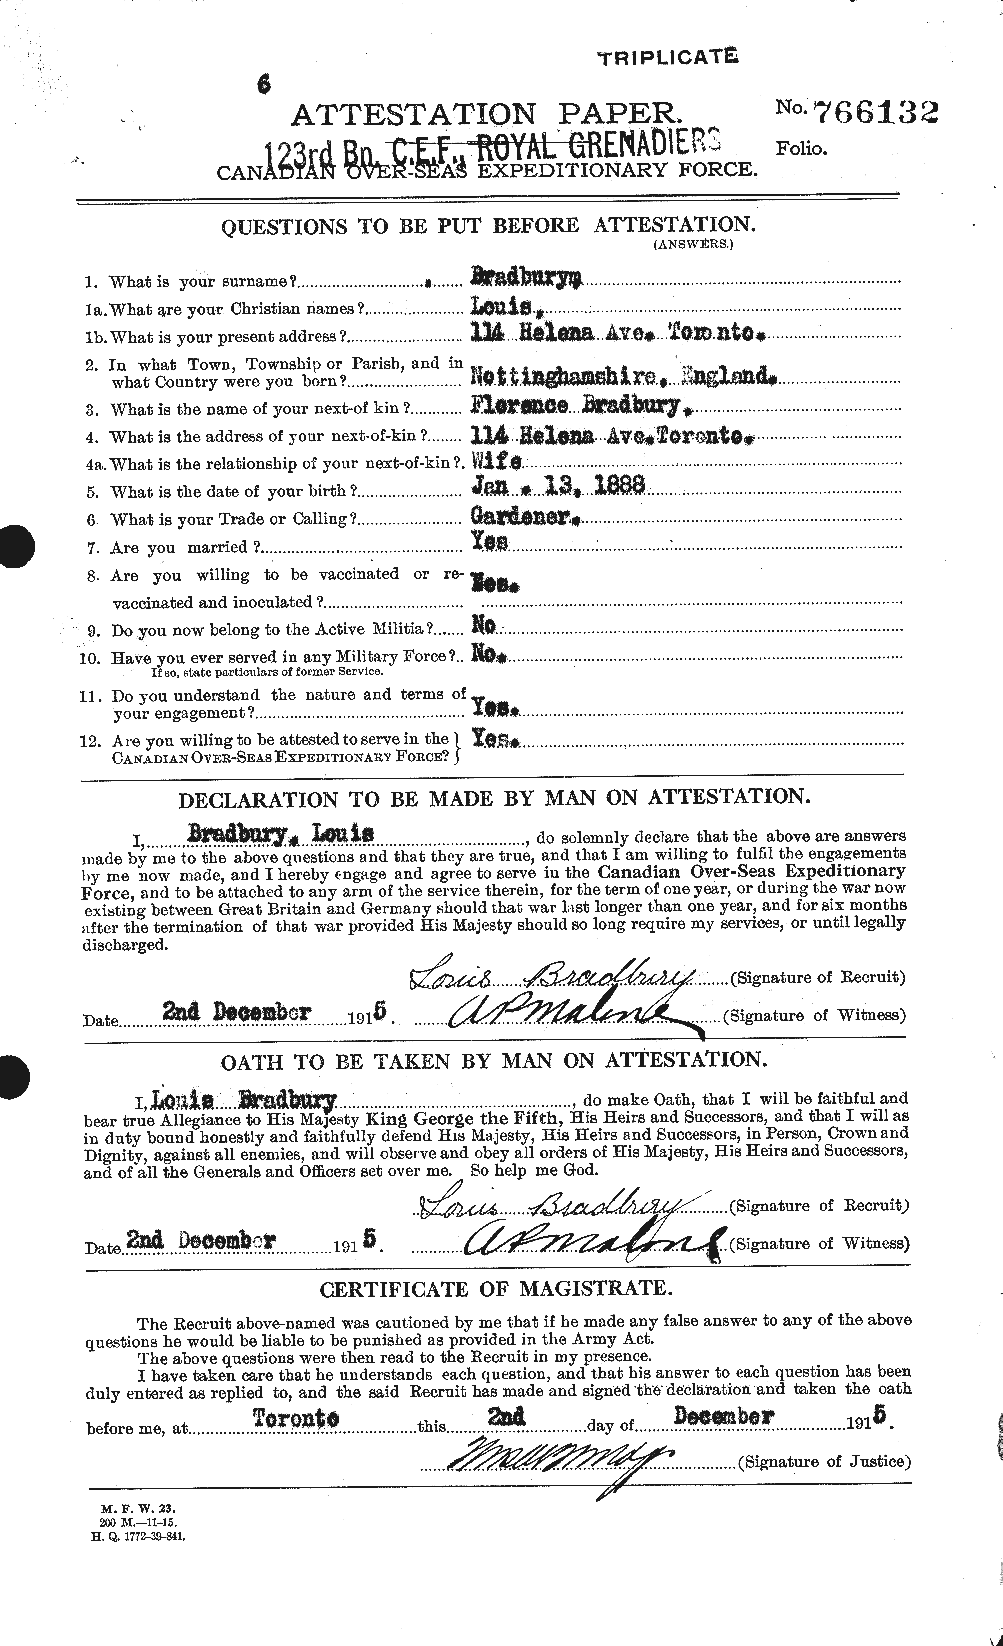 Dossiers du Personnel de la Première Guerre mondiale - CEC 258529a